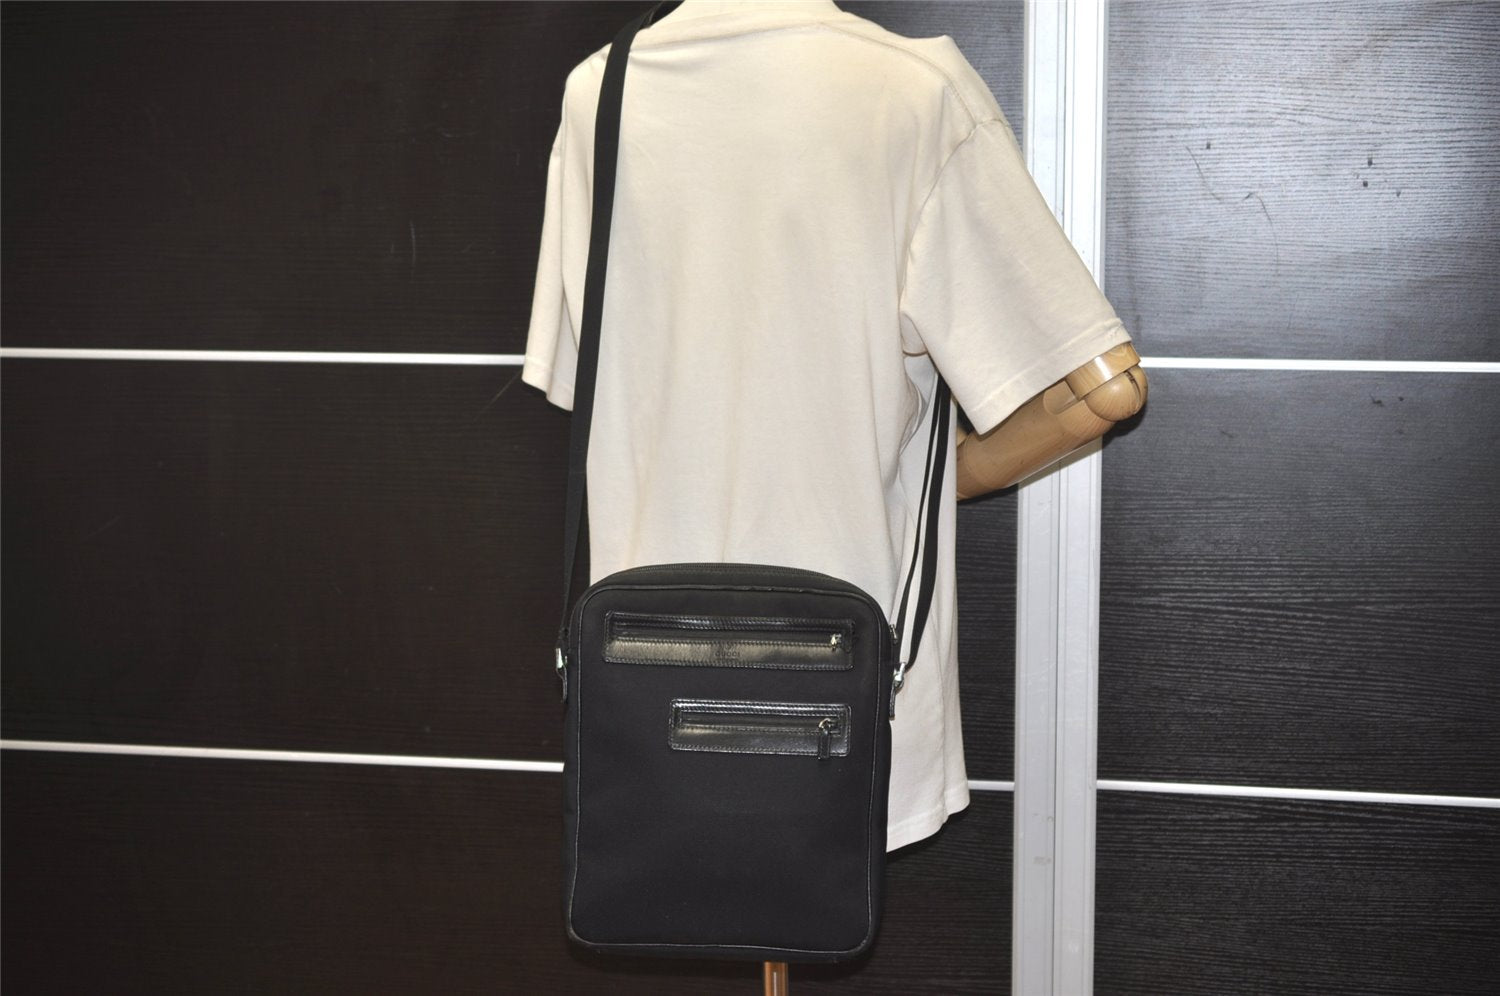 Authentic GUCCI Shoulder Cross Bag Purse Nylon Leather 92551 Black 8443J